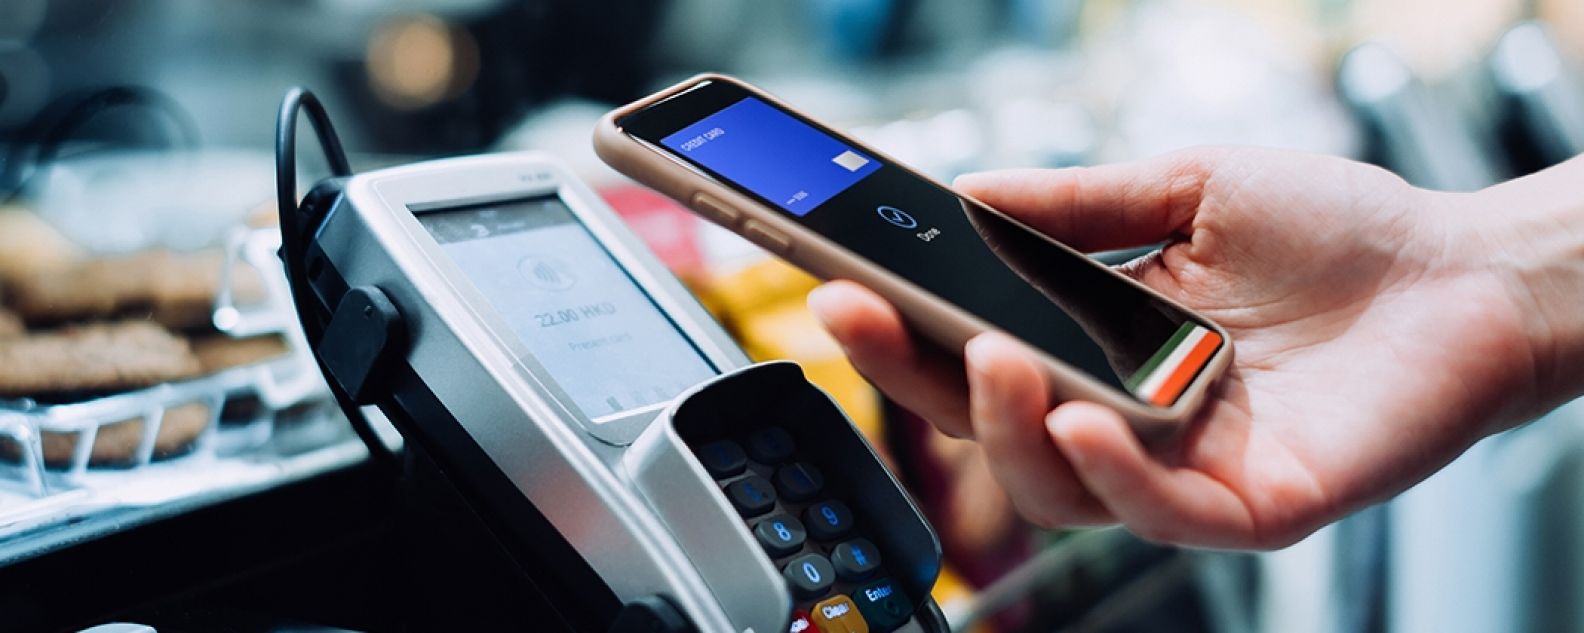 Un dueño de una tienda sonriente que usa una tablet digital para procesar una transacción de tarjeta de crédito con el cliente